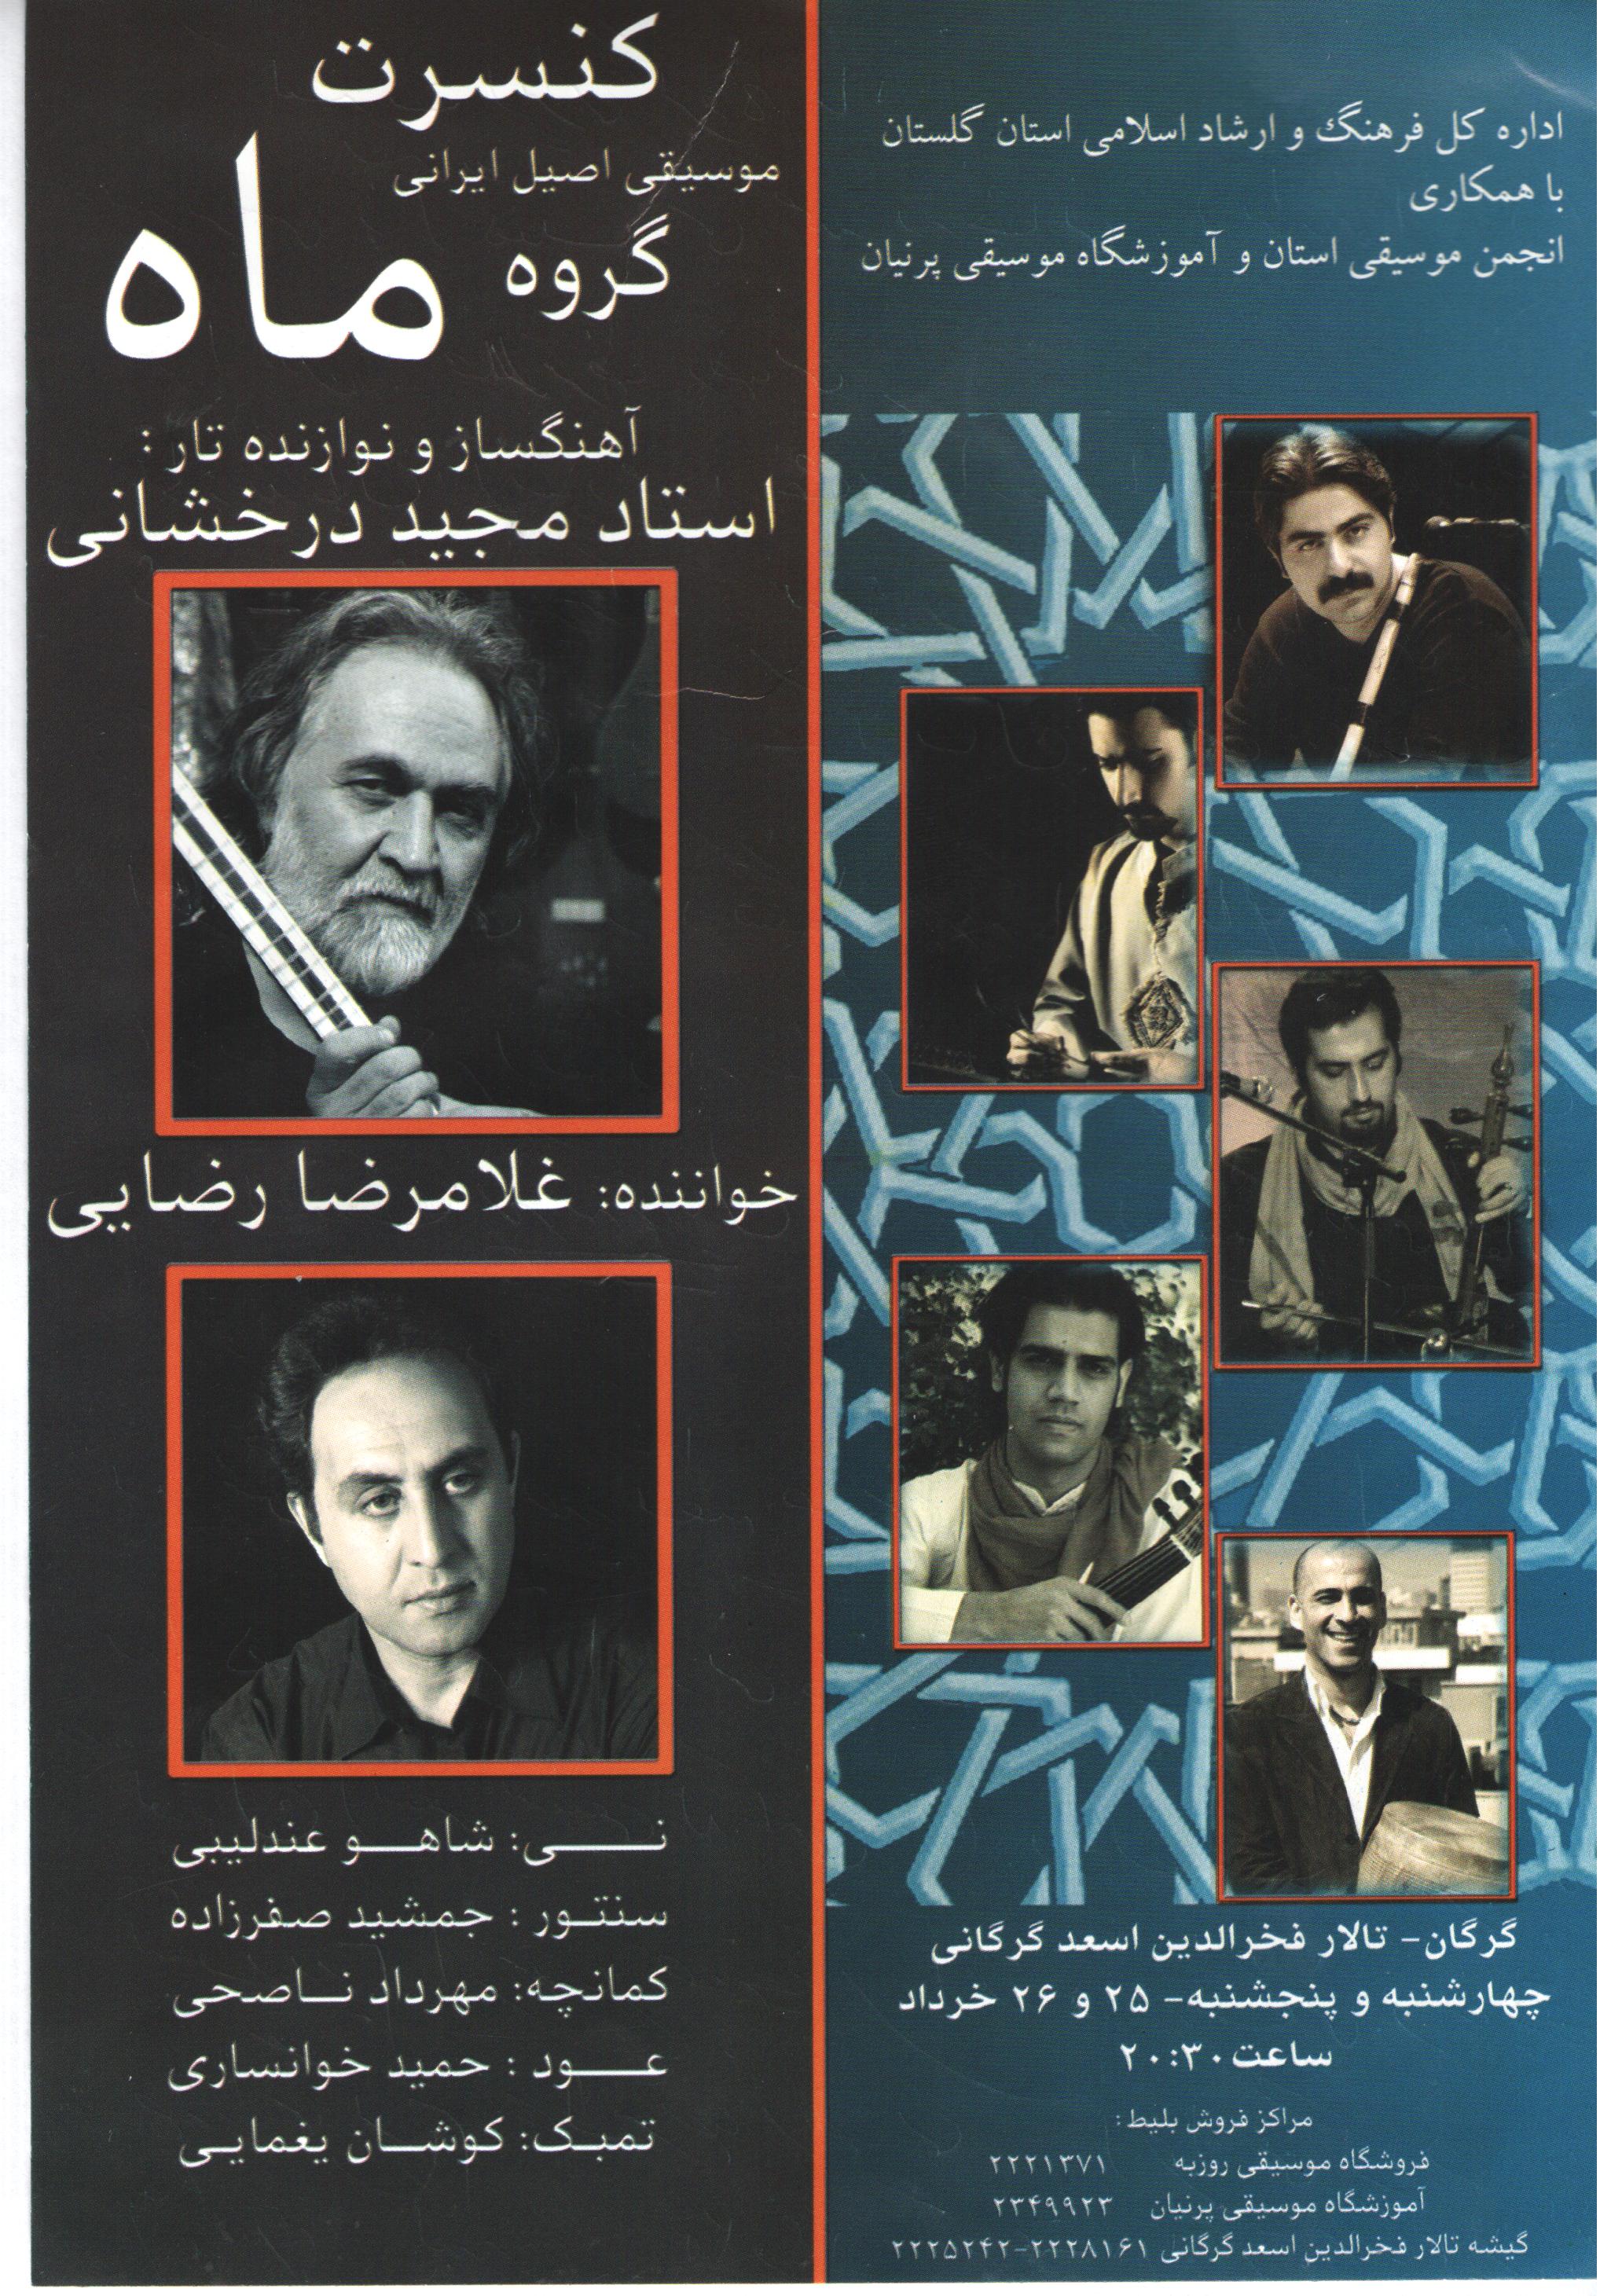 اجرای کنسرت موسیقی اصیل ایرانی گروه ماه